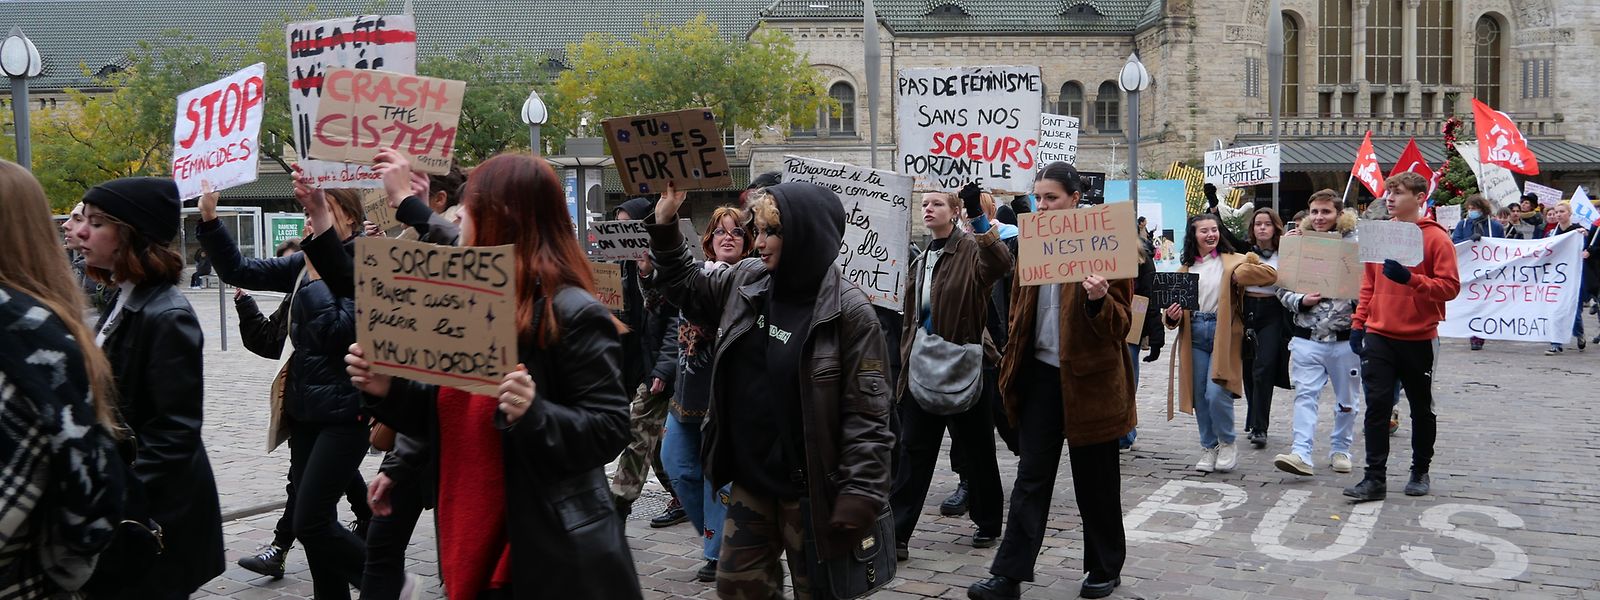 Le collectif féministe La Grenade organise régulièrement des manifestations ou marches féministes à Metz.